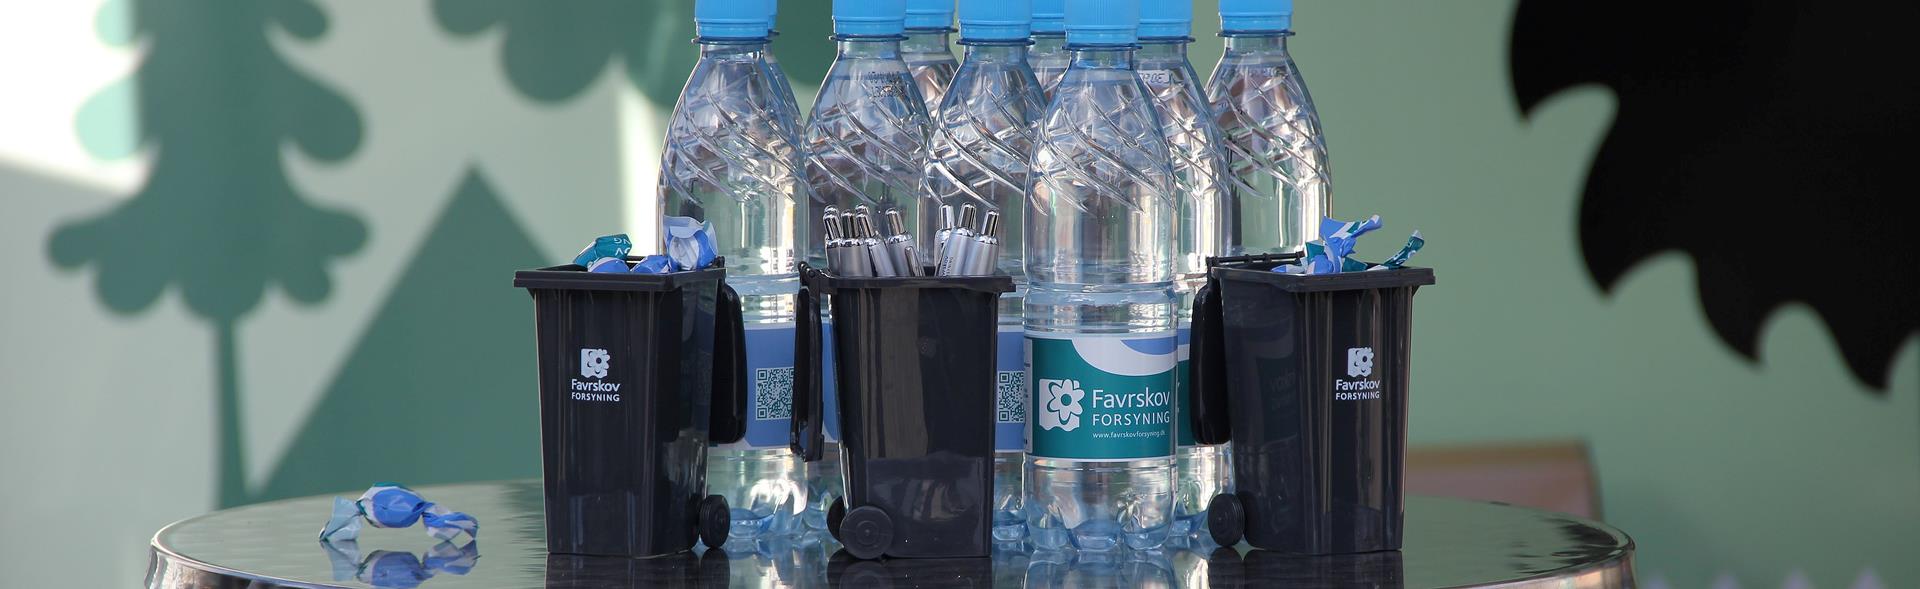 Plastflasker, bolsjer og mini affaldsbeholdere med Favrskov Forsynings logo